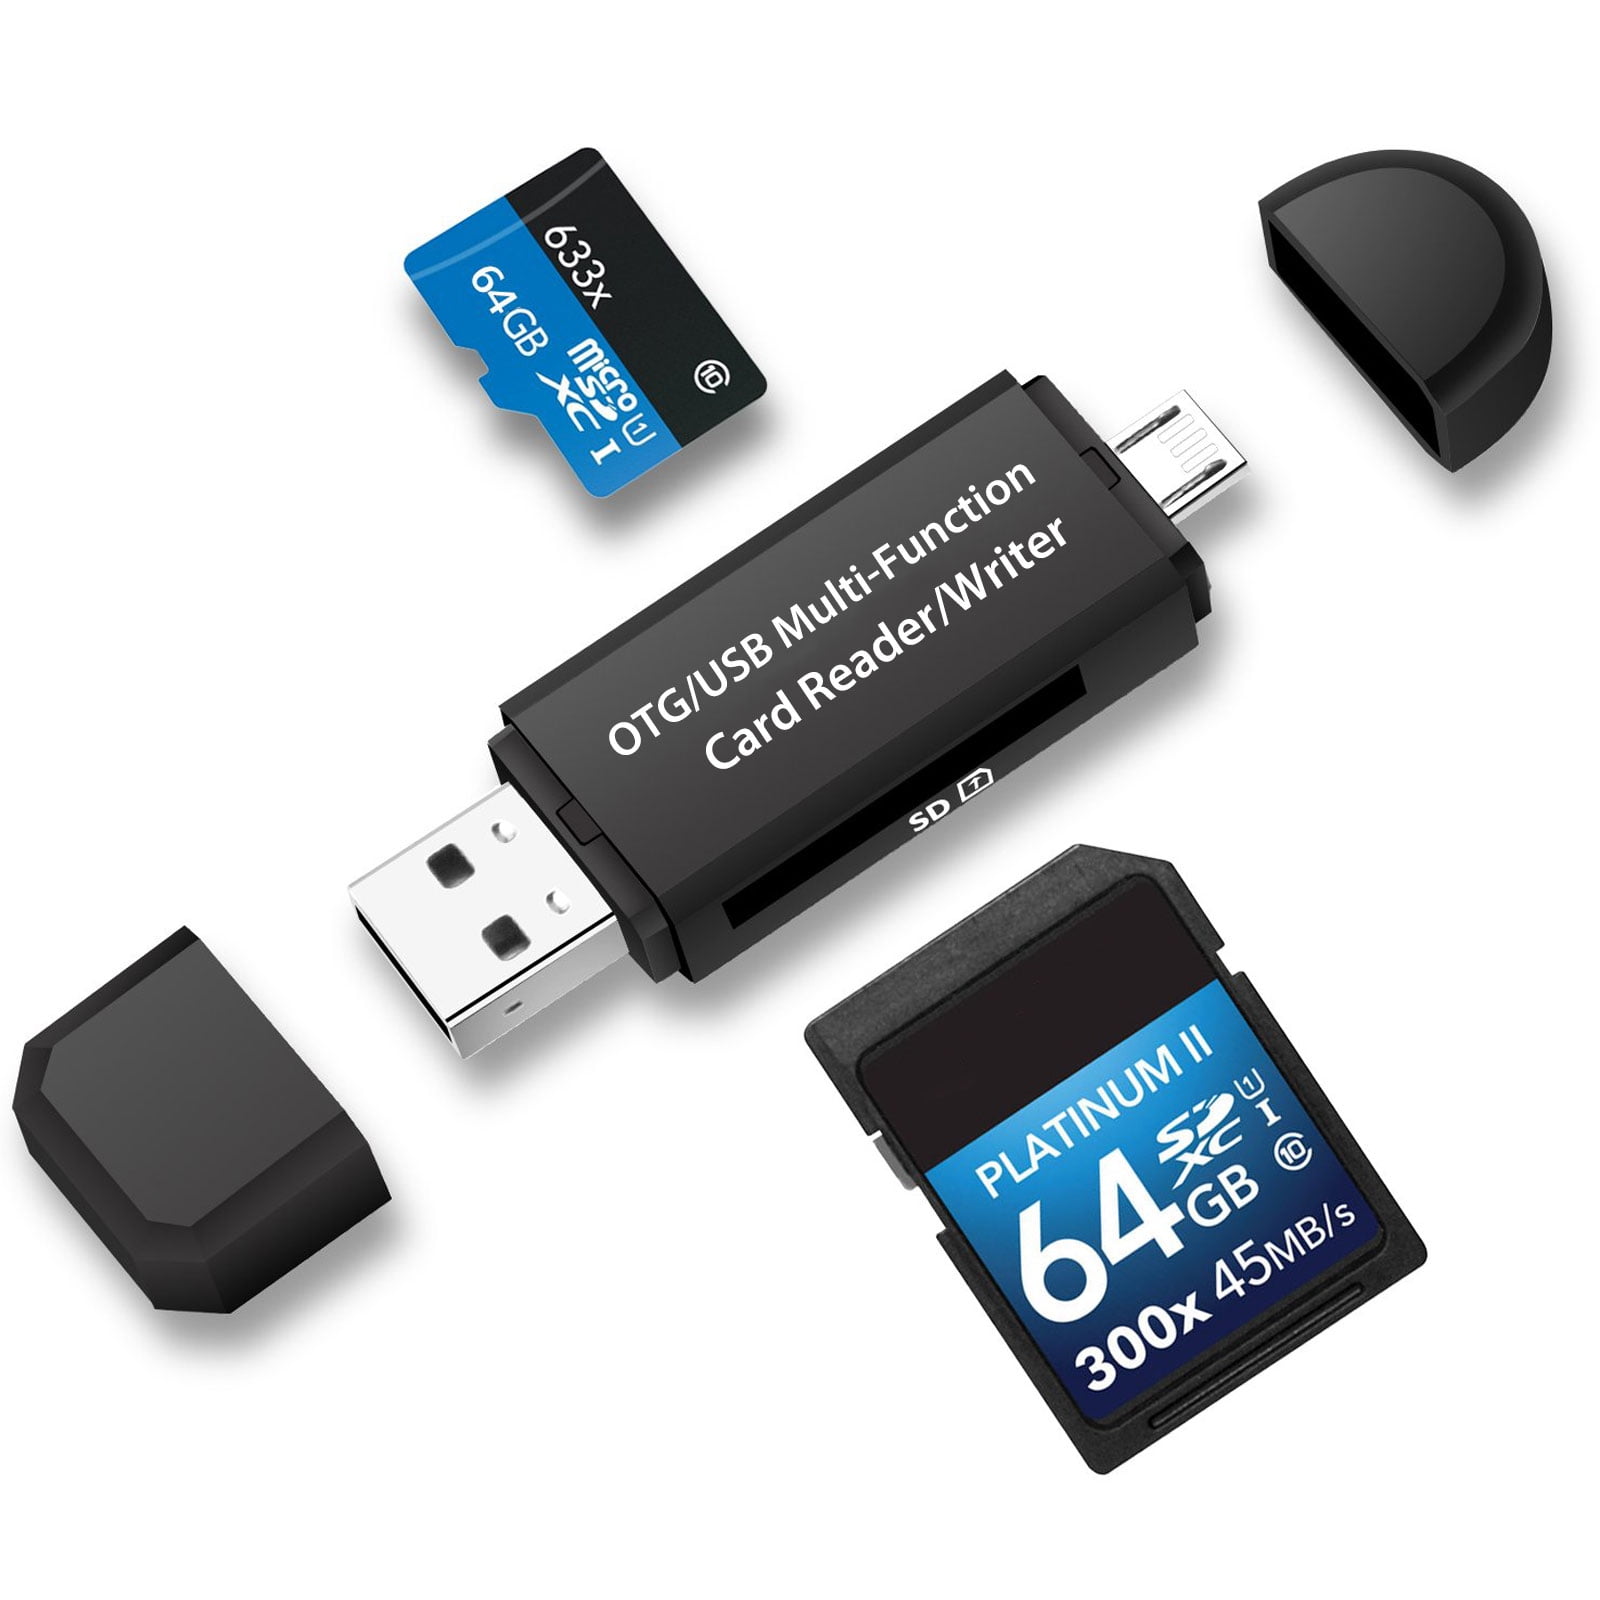 SDHC Micro SD Micro SDXC SD Lecteur de Carte mémoire USB OTG Adaptateur et USB 2.0 Portable pour SDXC RS-MMC MMC Micro SDHC Card et UHS-I Card 